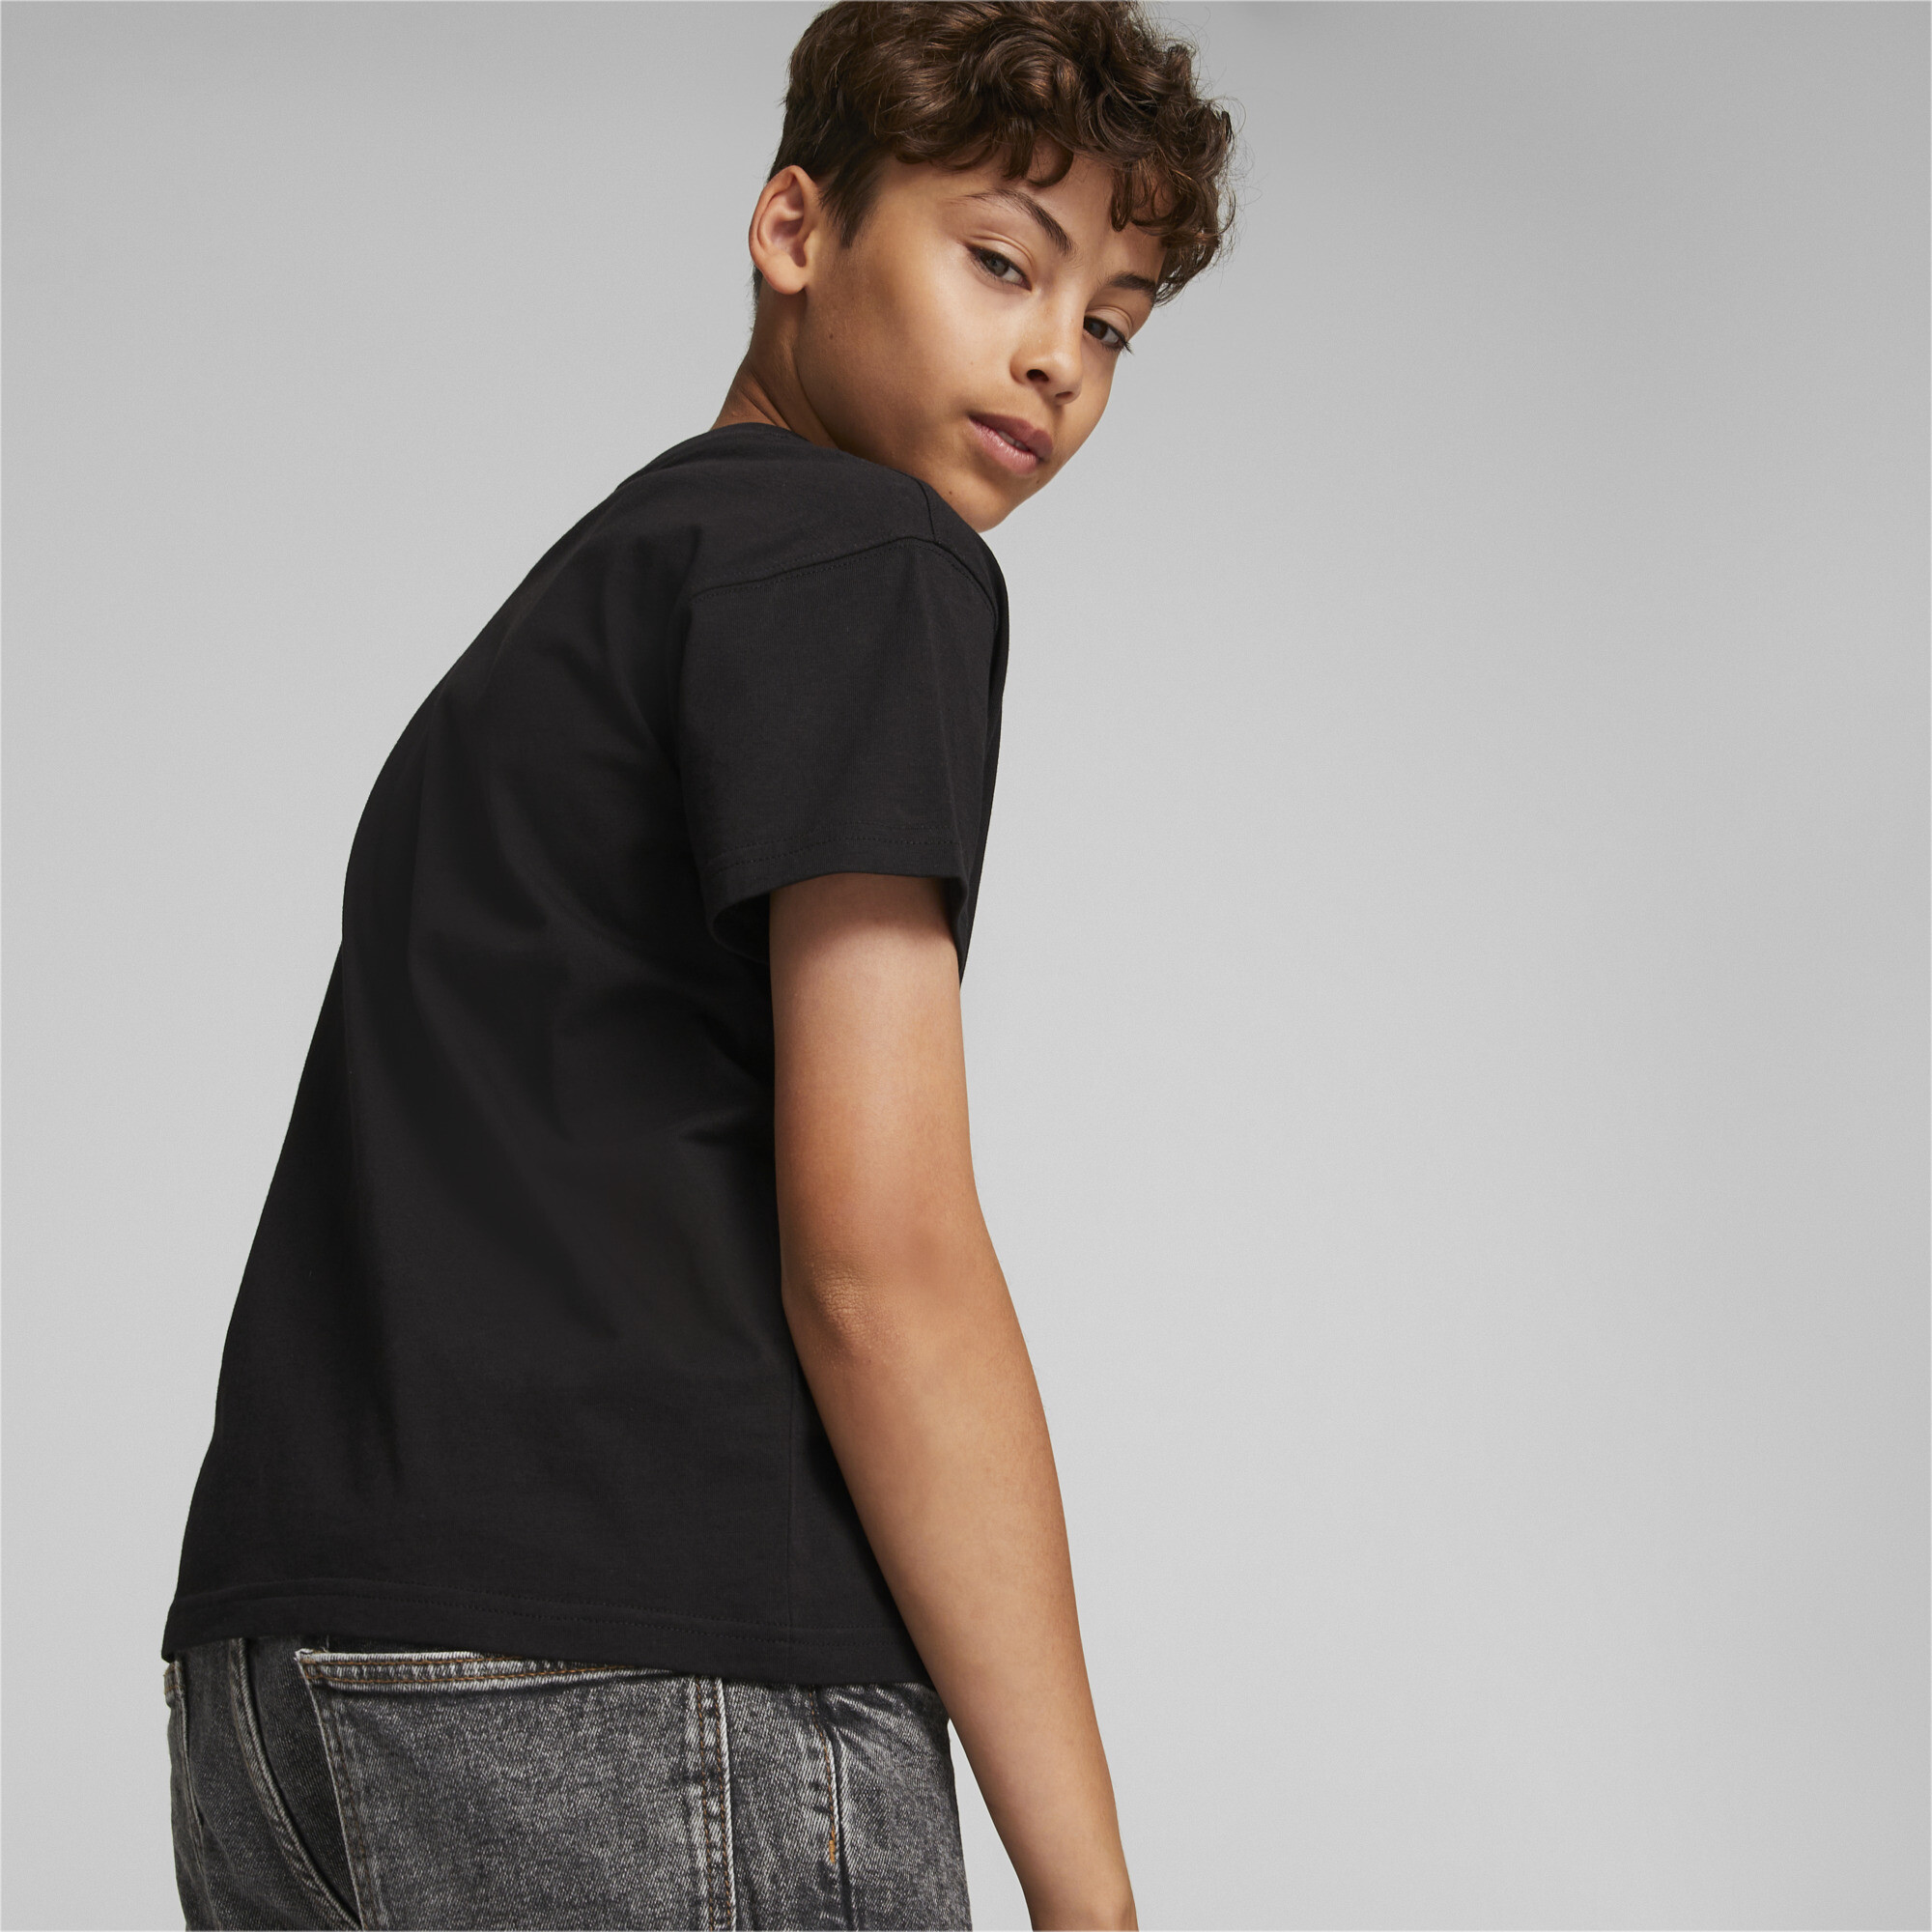 PUMA Fandom T-Shirt In Black, Size 11-12 Youth